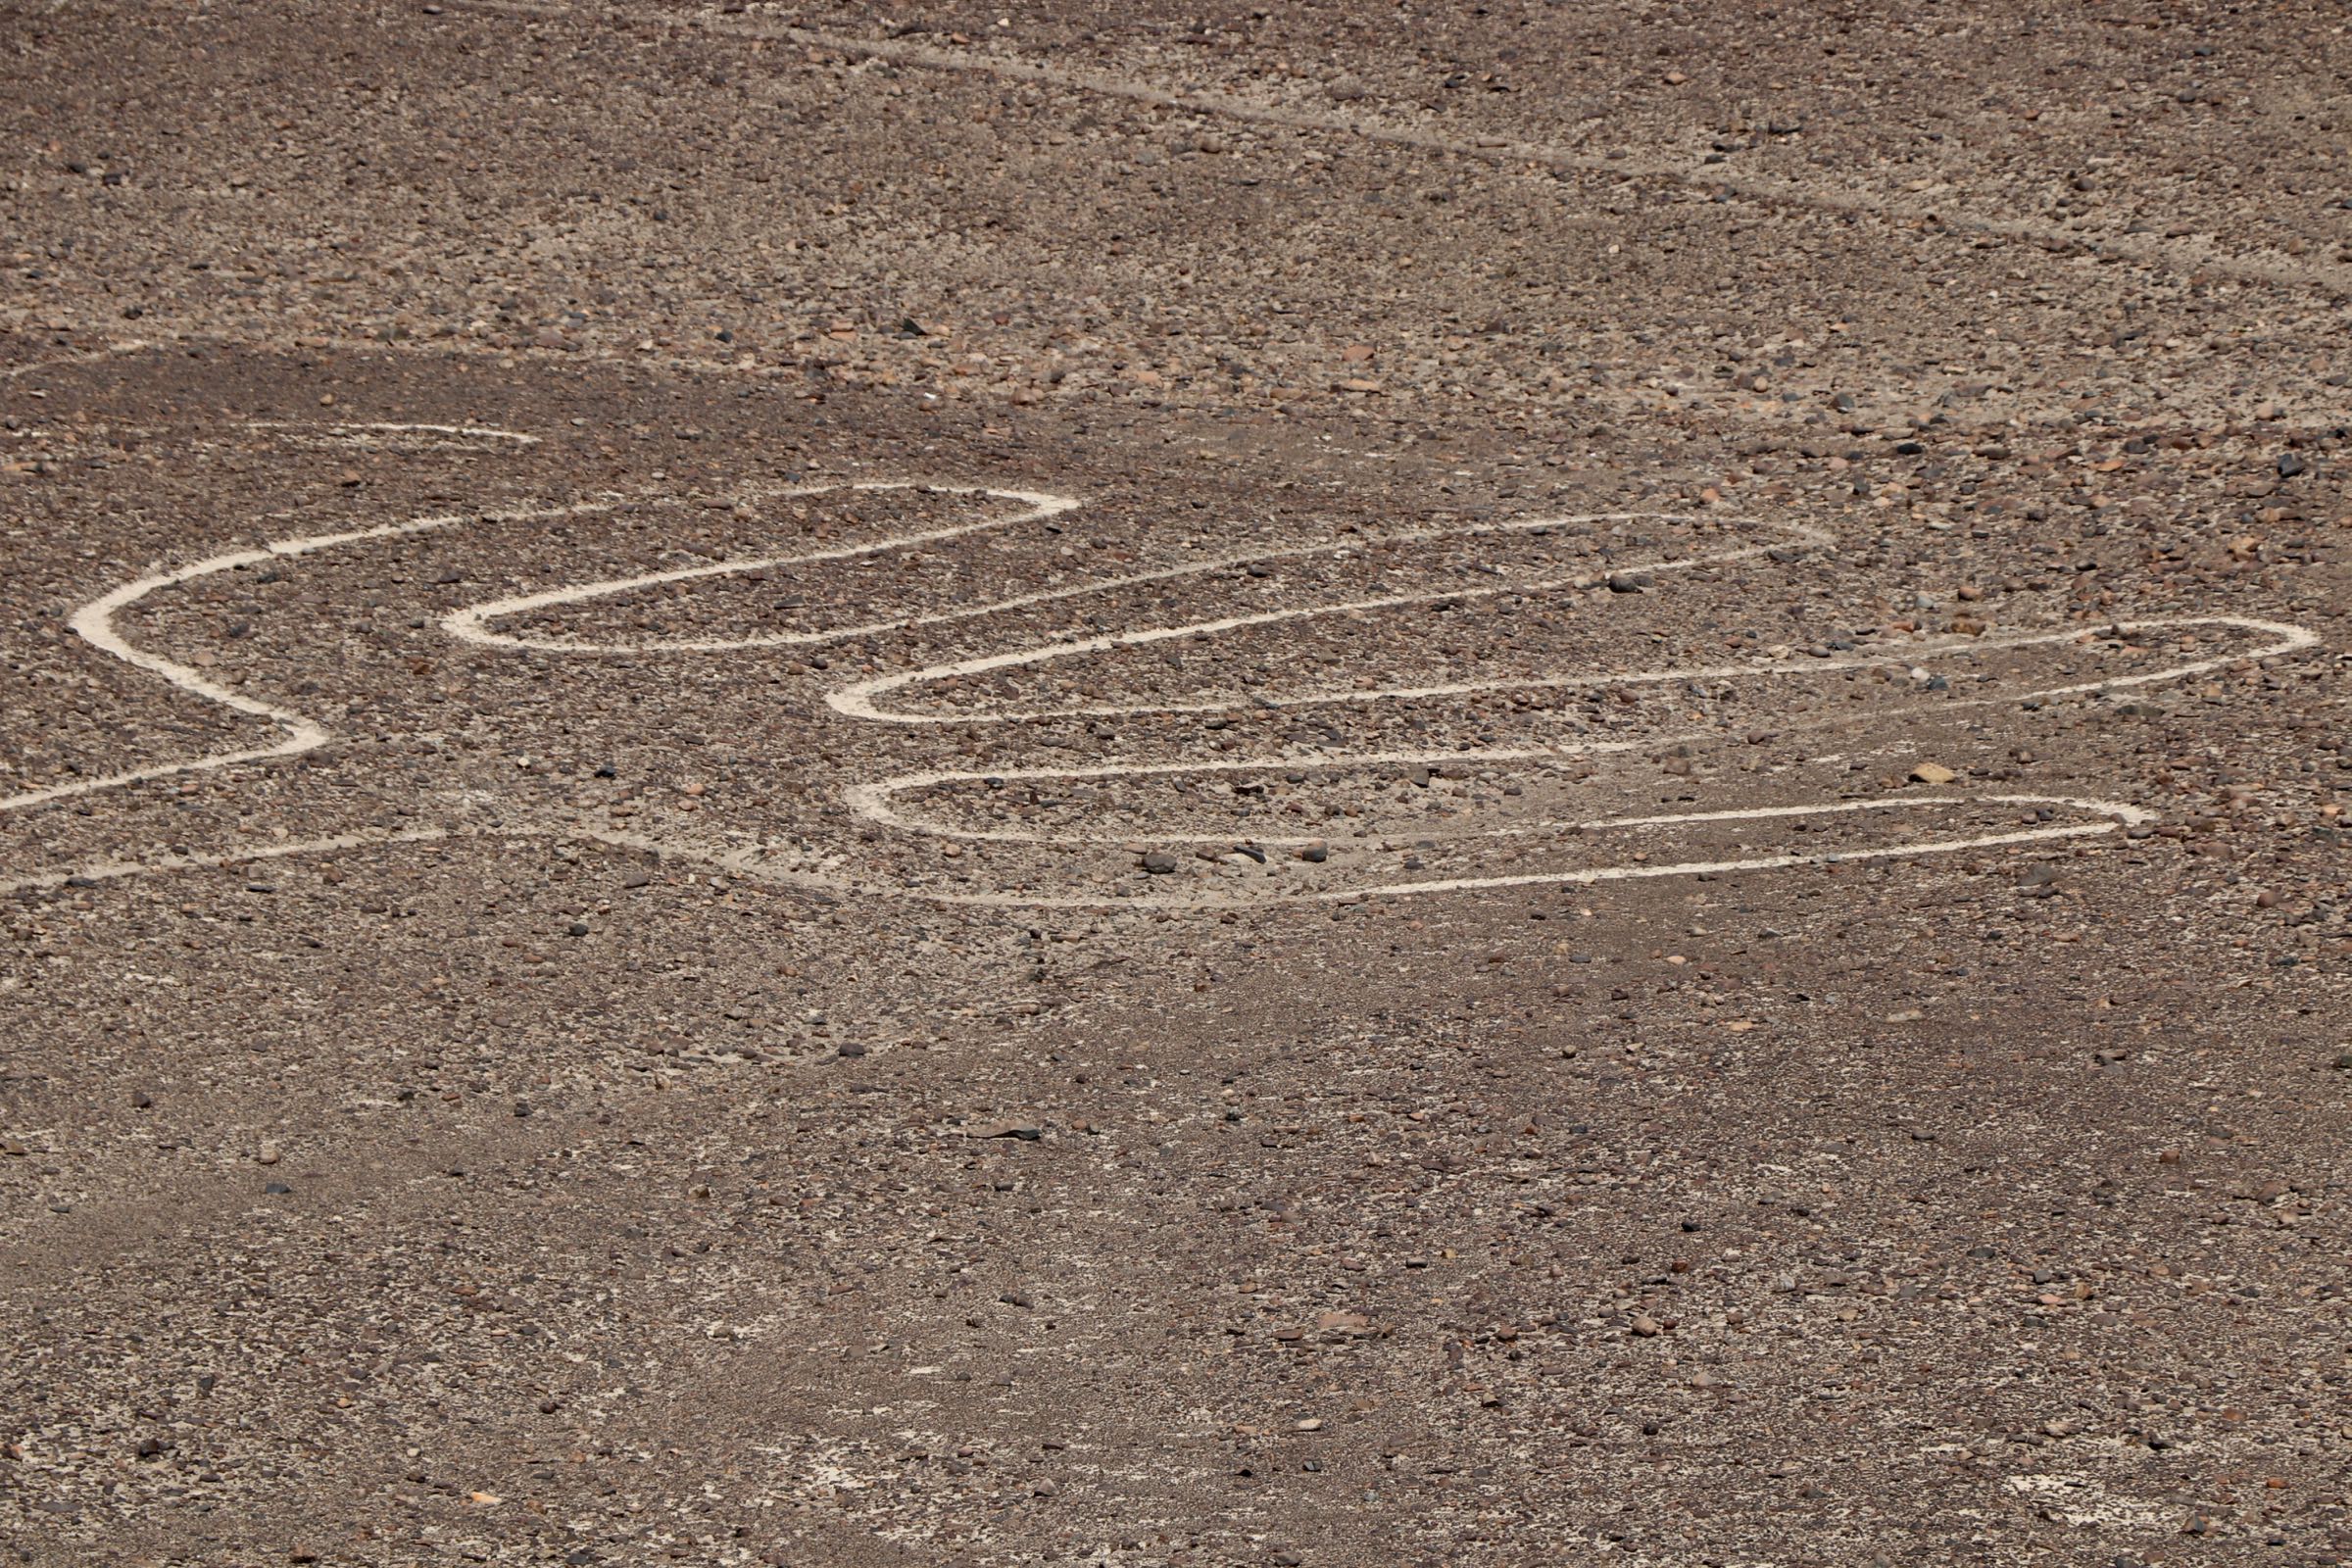 Nazca-Linien, Nazca, Peru